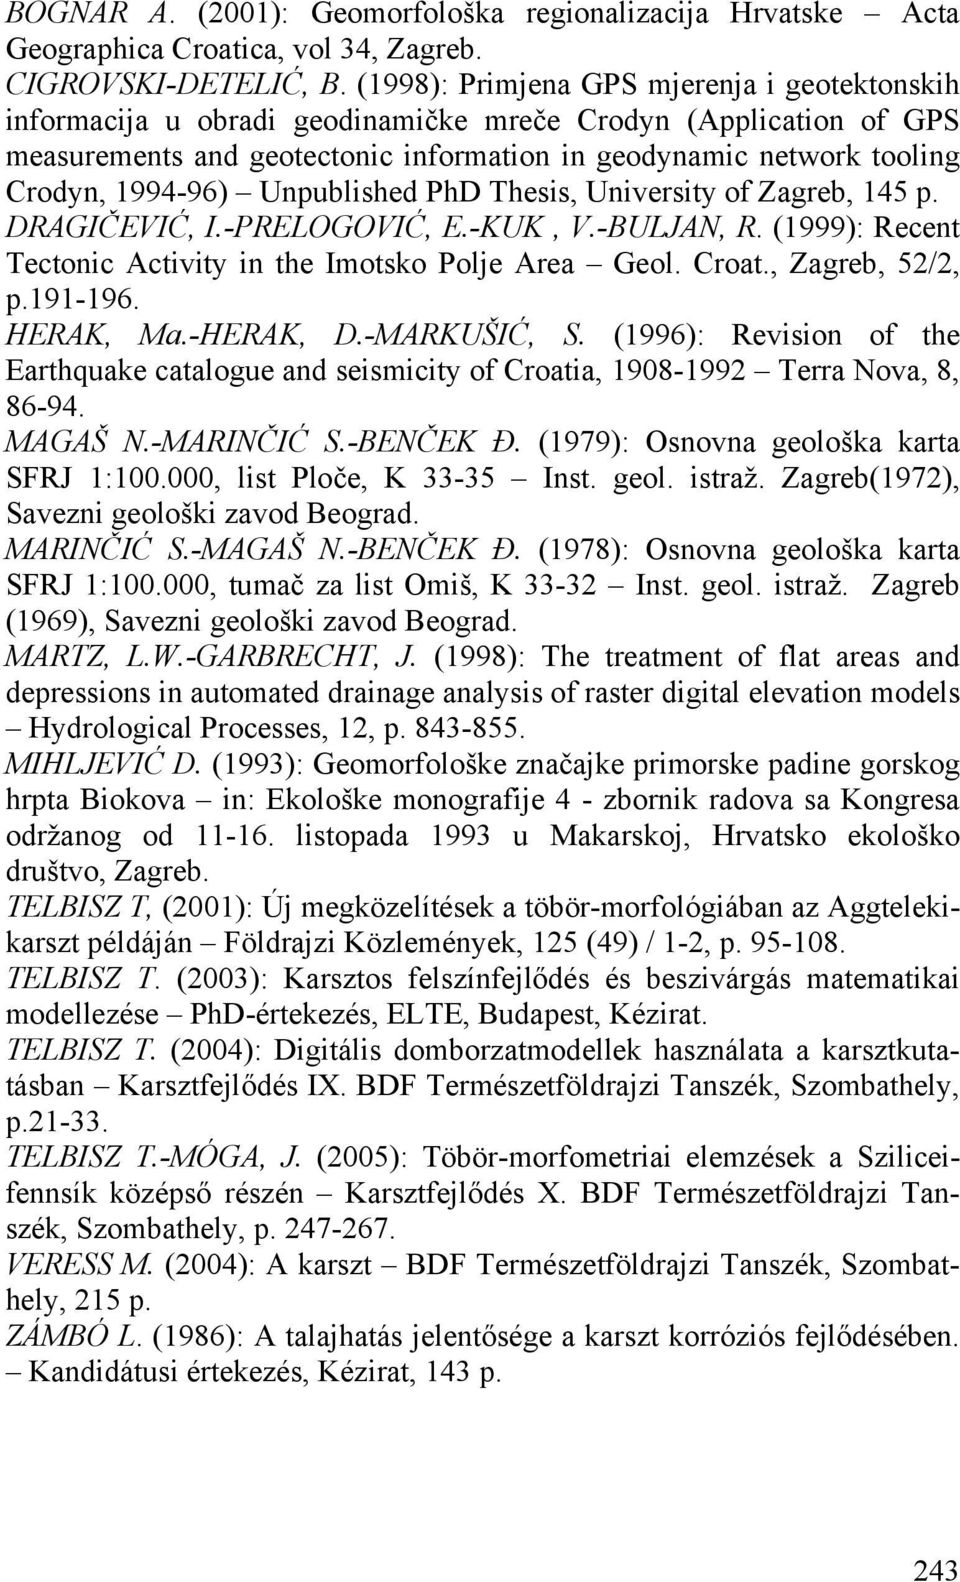 1994-96) Unpublished PhD Thesis, University of Zagreb, 145 p. DRAGIČEVIĆ, I.-PRELOGOVIĆ, E.-KUK, V.-BULJAN, R. (1999): Recent Tectonic Activity in the Imotsko Polje Area Geol. Croat., Zagreb, 52/2, p.